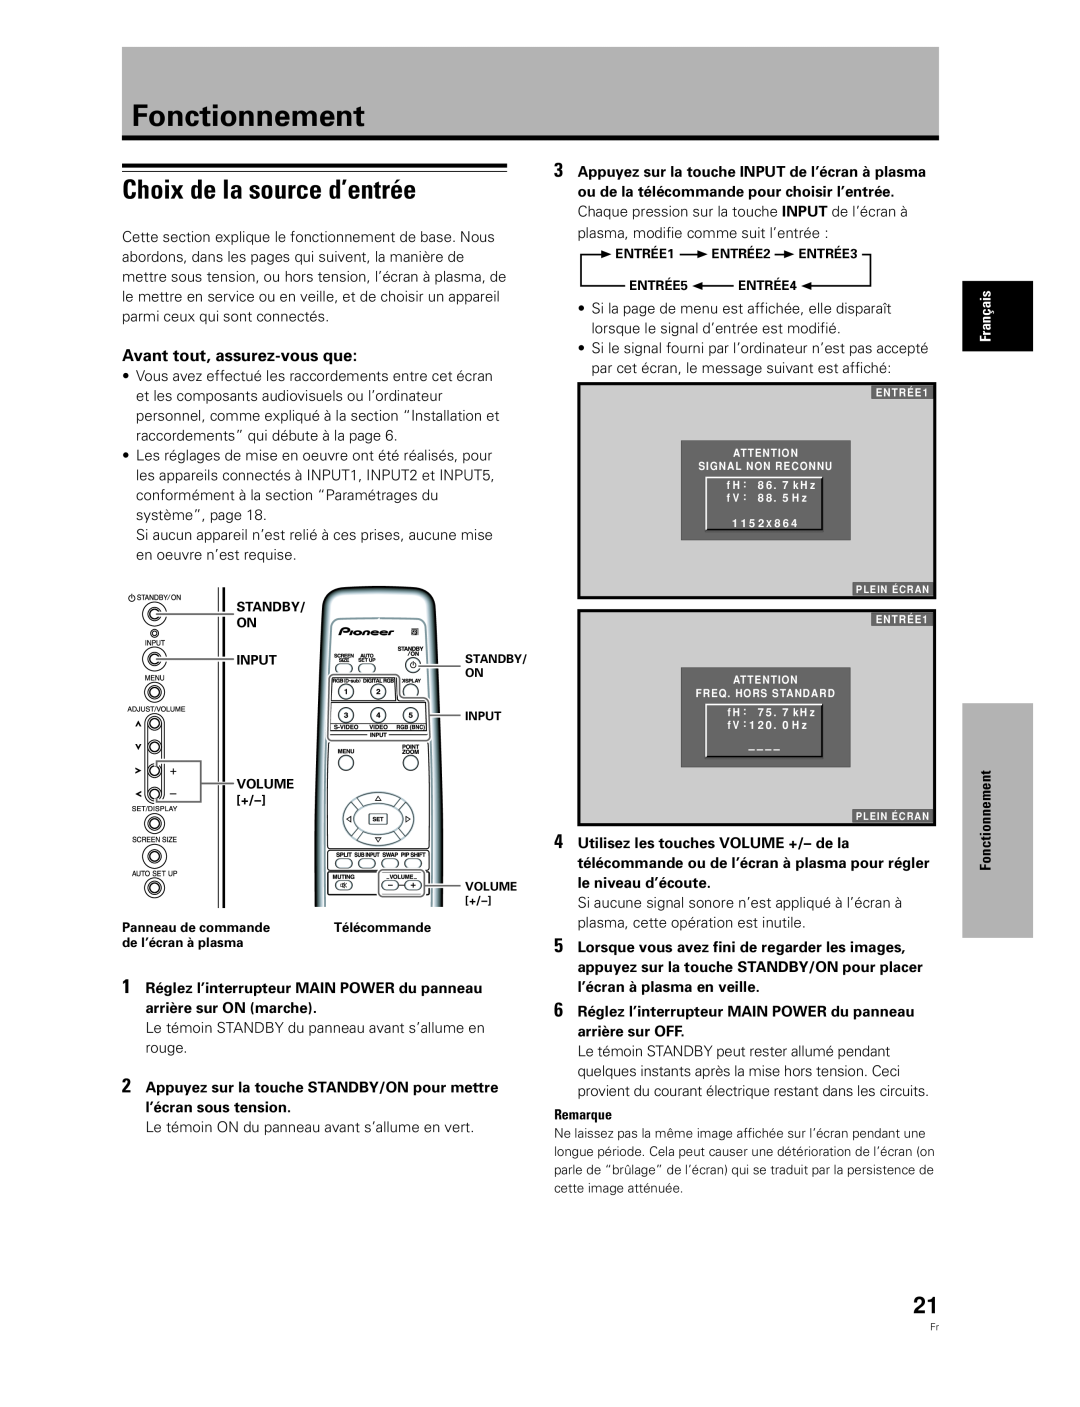 Pioneer PDA-5003, PDA-5004 manual Fonctionnement, Choix de la source d’entrée, Avant tout, assurez-vous que 